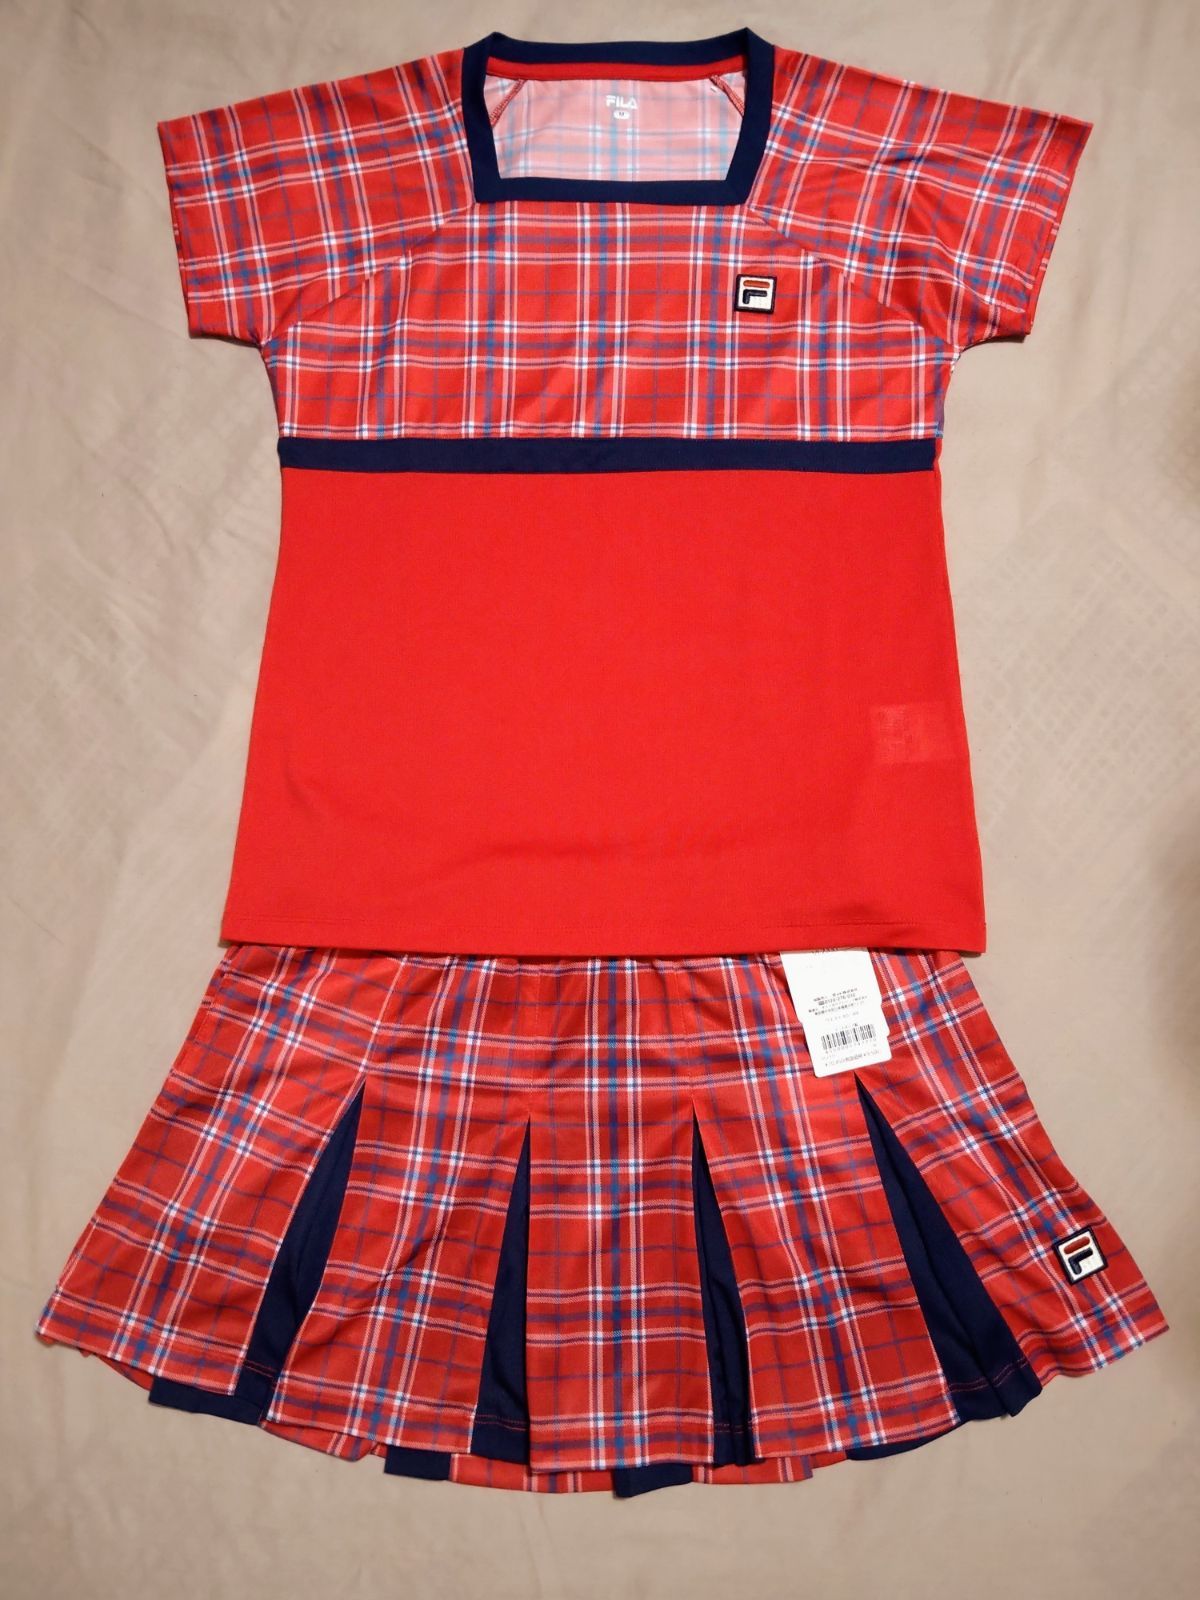 メルカリShops - FILA フィラ テニスウェア ゲームシャツ Mサイズ 赤 チェック柄 美品